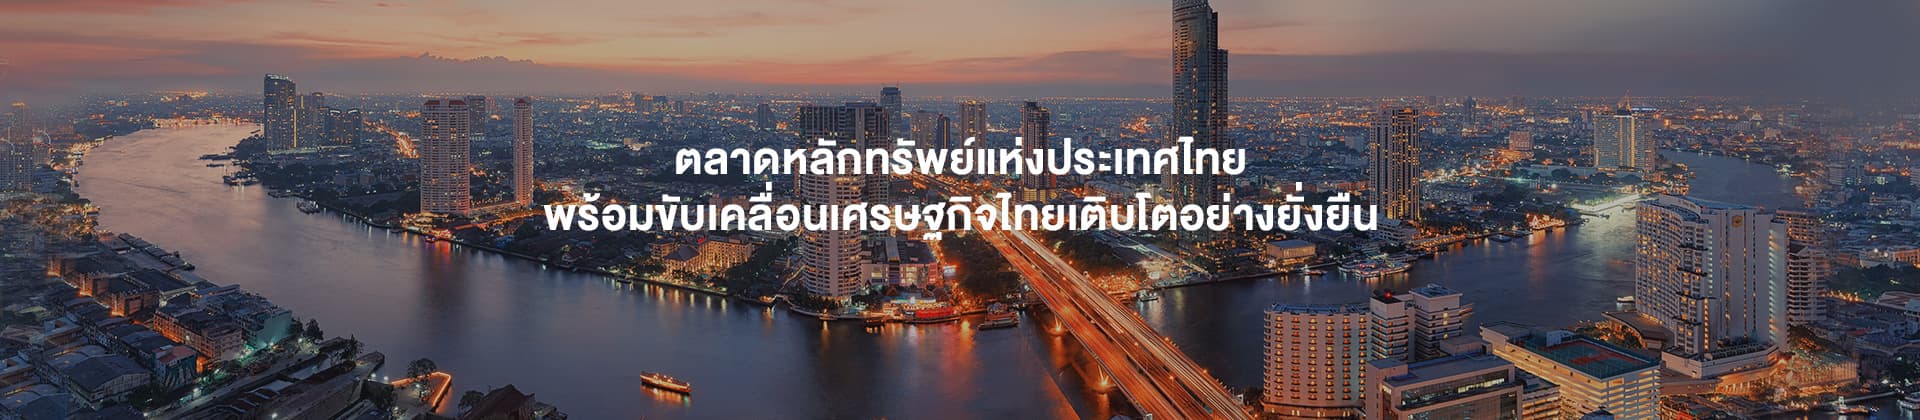 หน้าหลัก - ตลาดหลักทรัพย์แห่งประเทศไทย